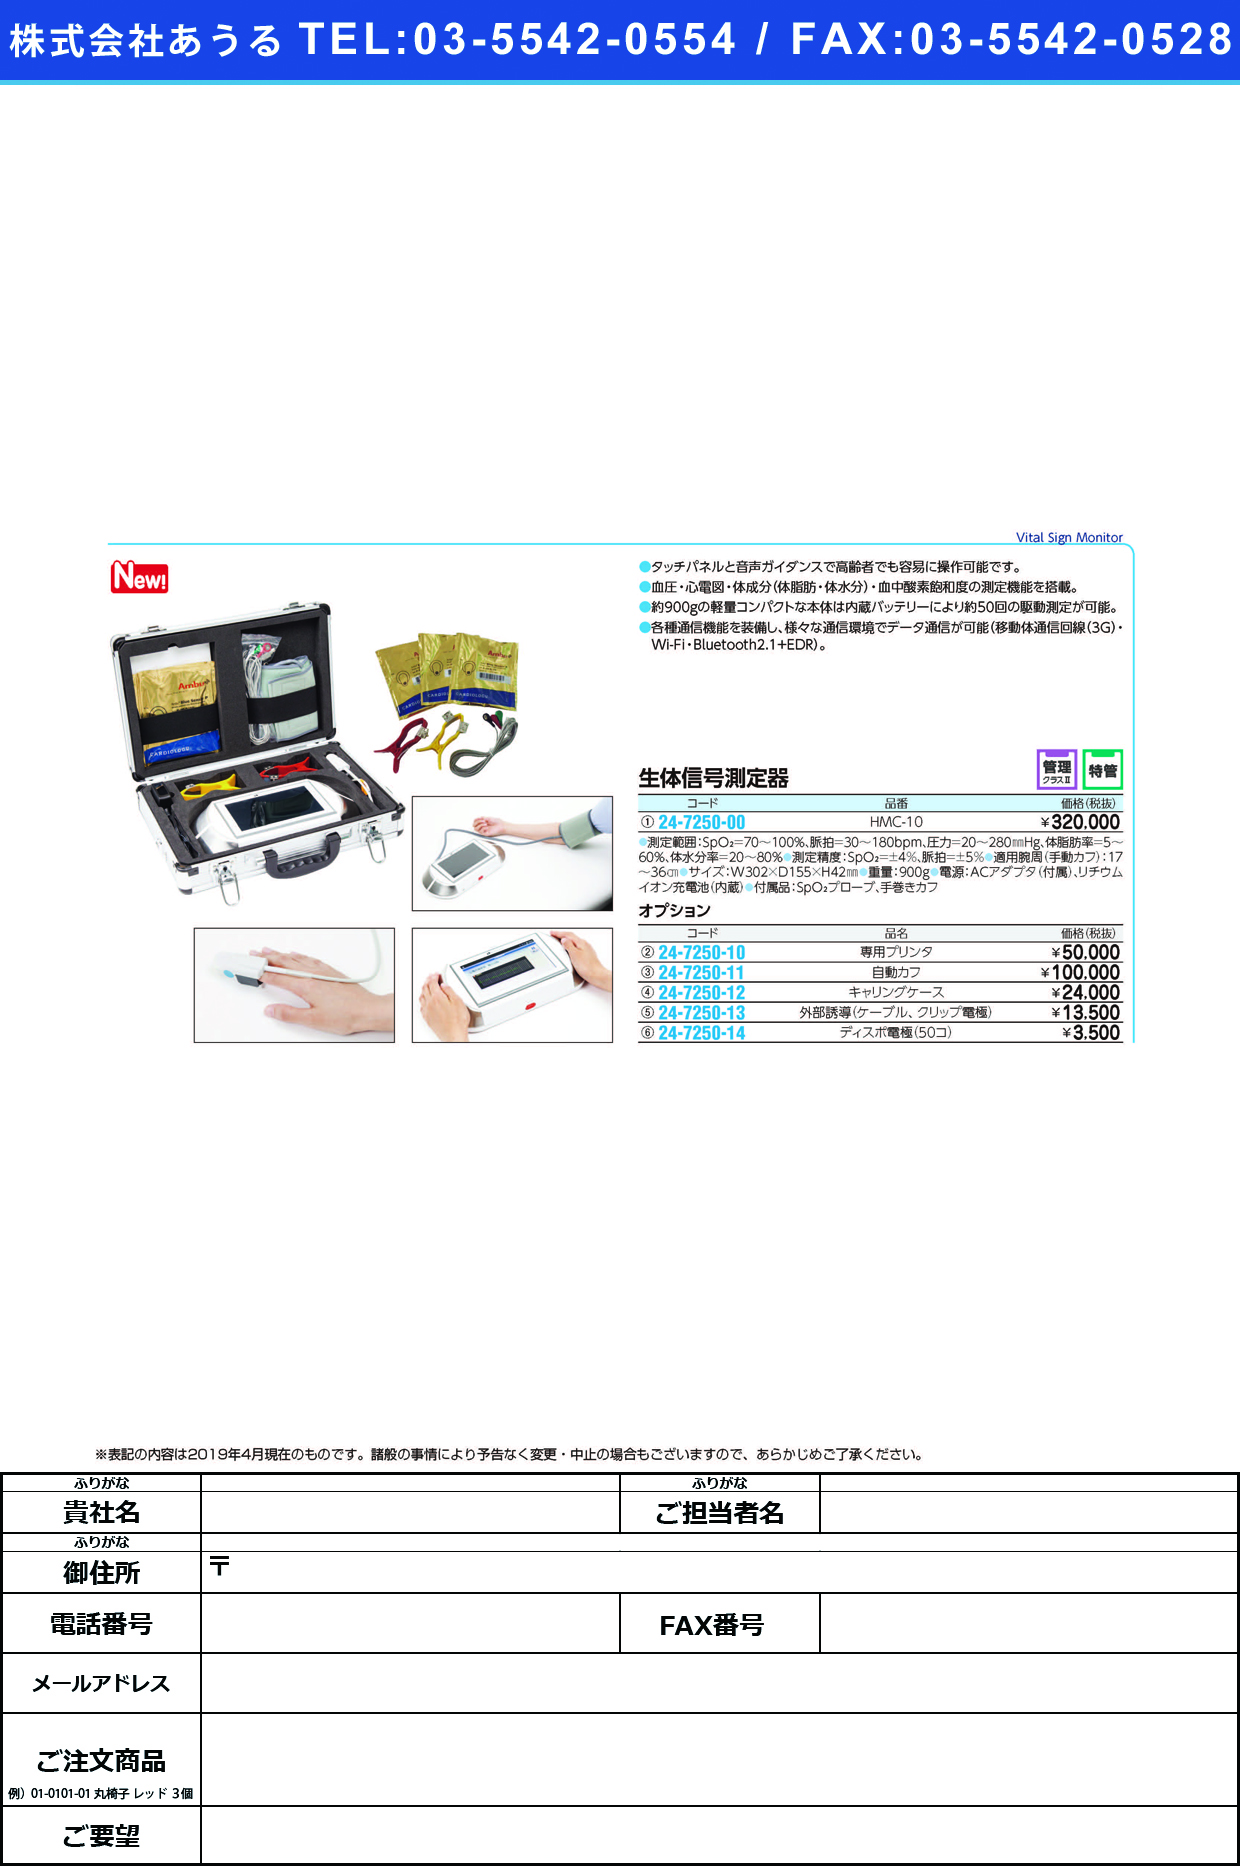 (24-7250-00)生体信号測定器HMC-10 ｾｲﾀｲｼﾝｺﾞｳｿｸﾃｲｷ(パラマ・テック)【1台単位】【2019年カタログ商品】